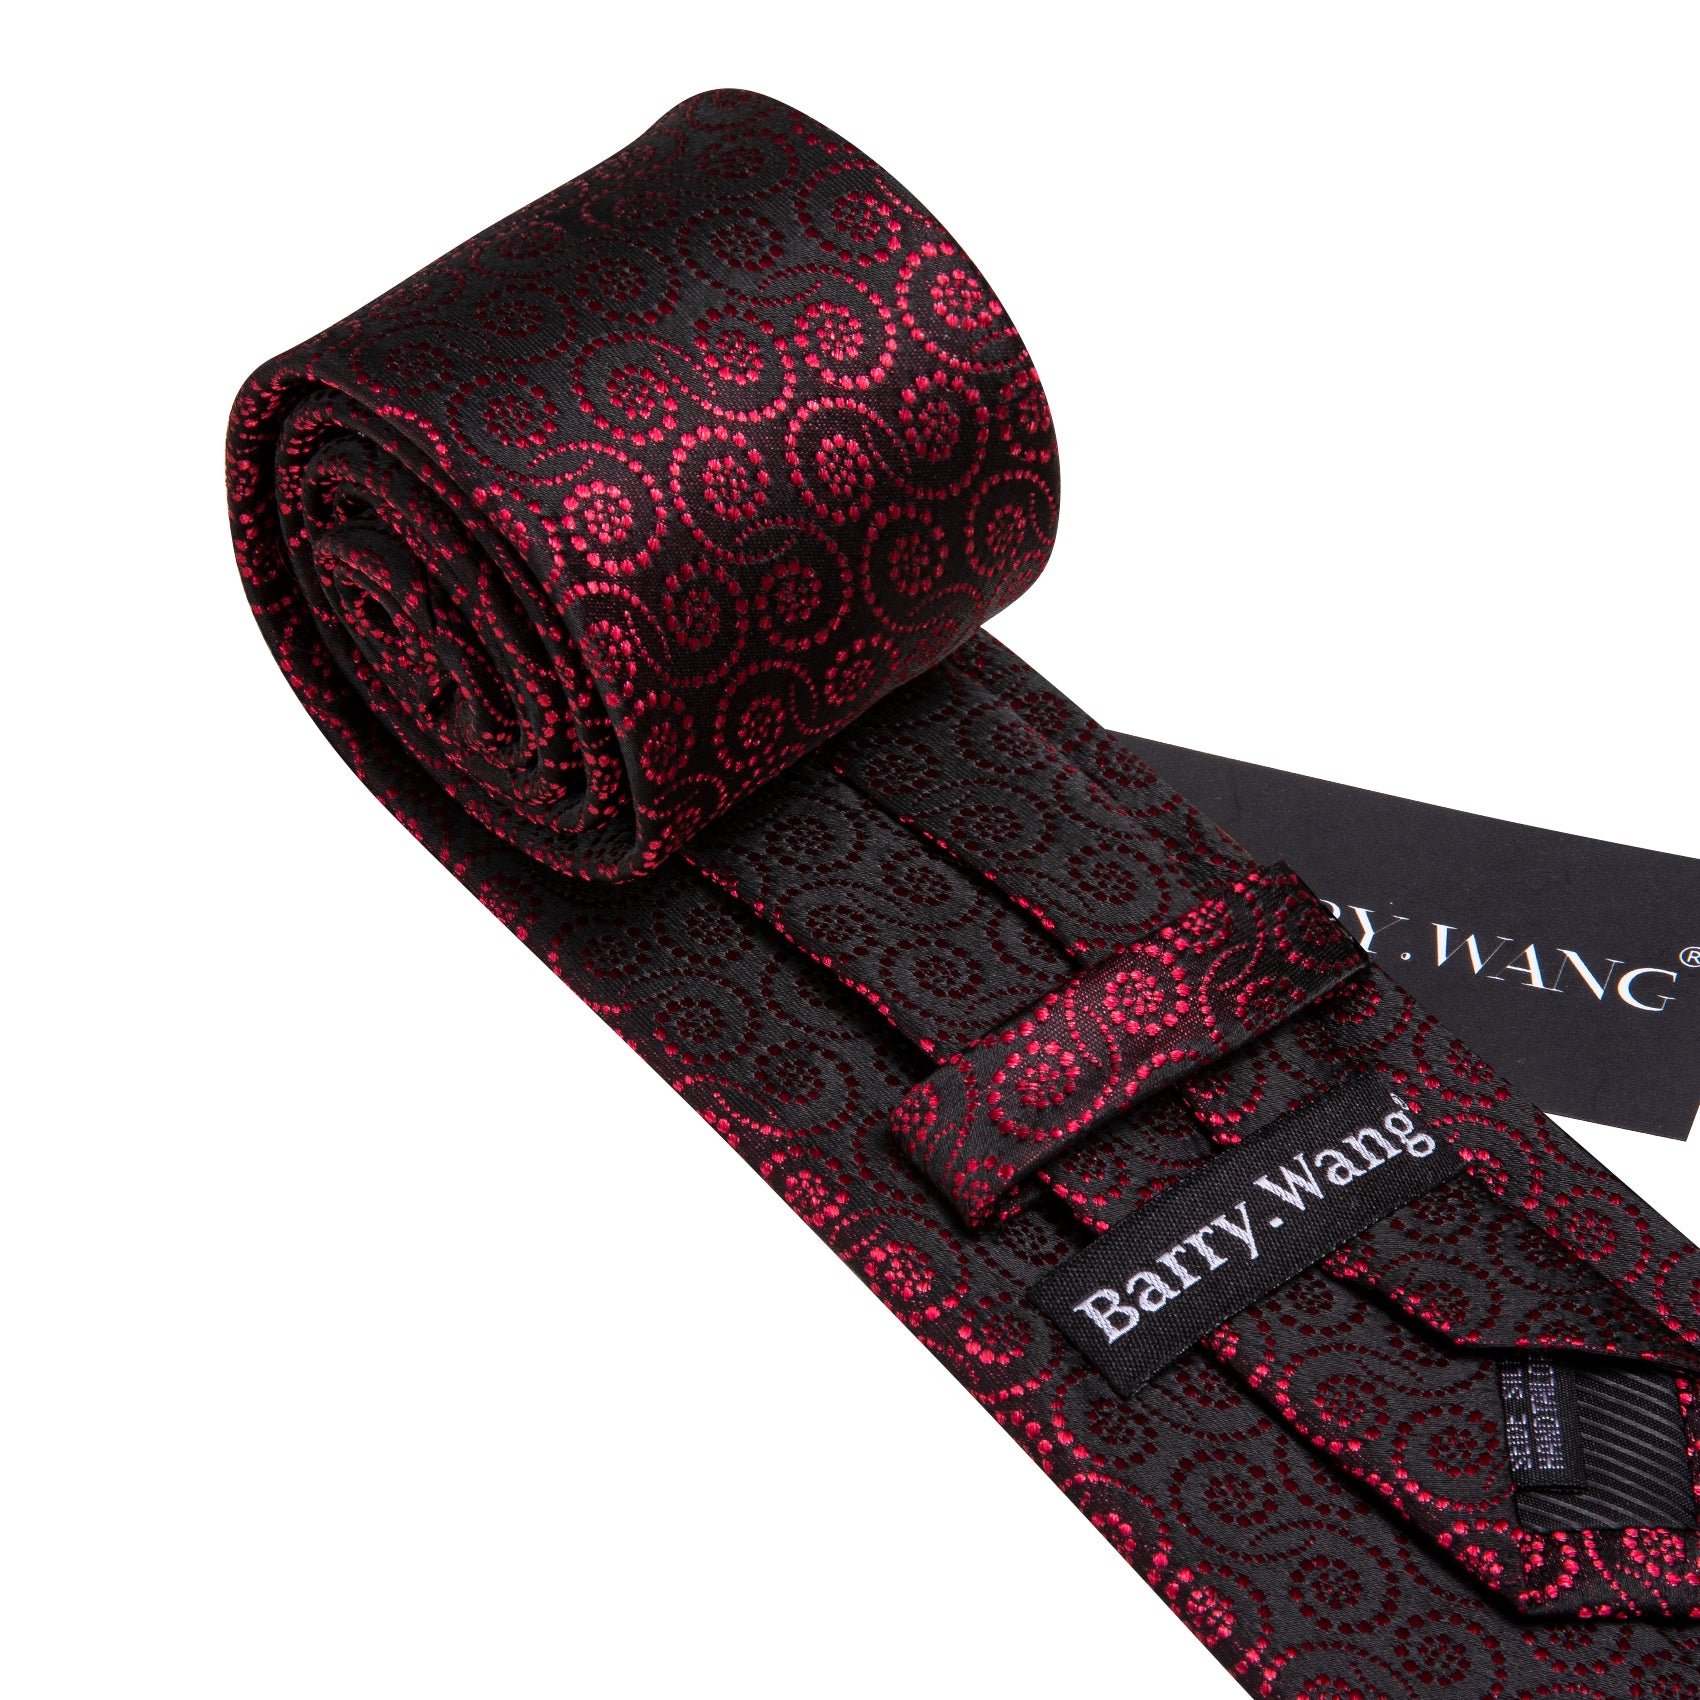 Novetly Red Black Floral Silk Tie Pocket Square Cufflinks Set